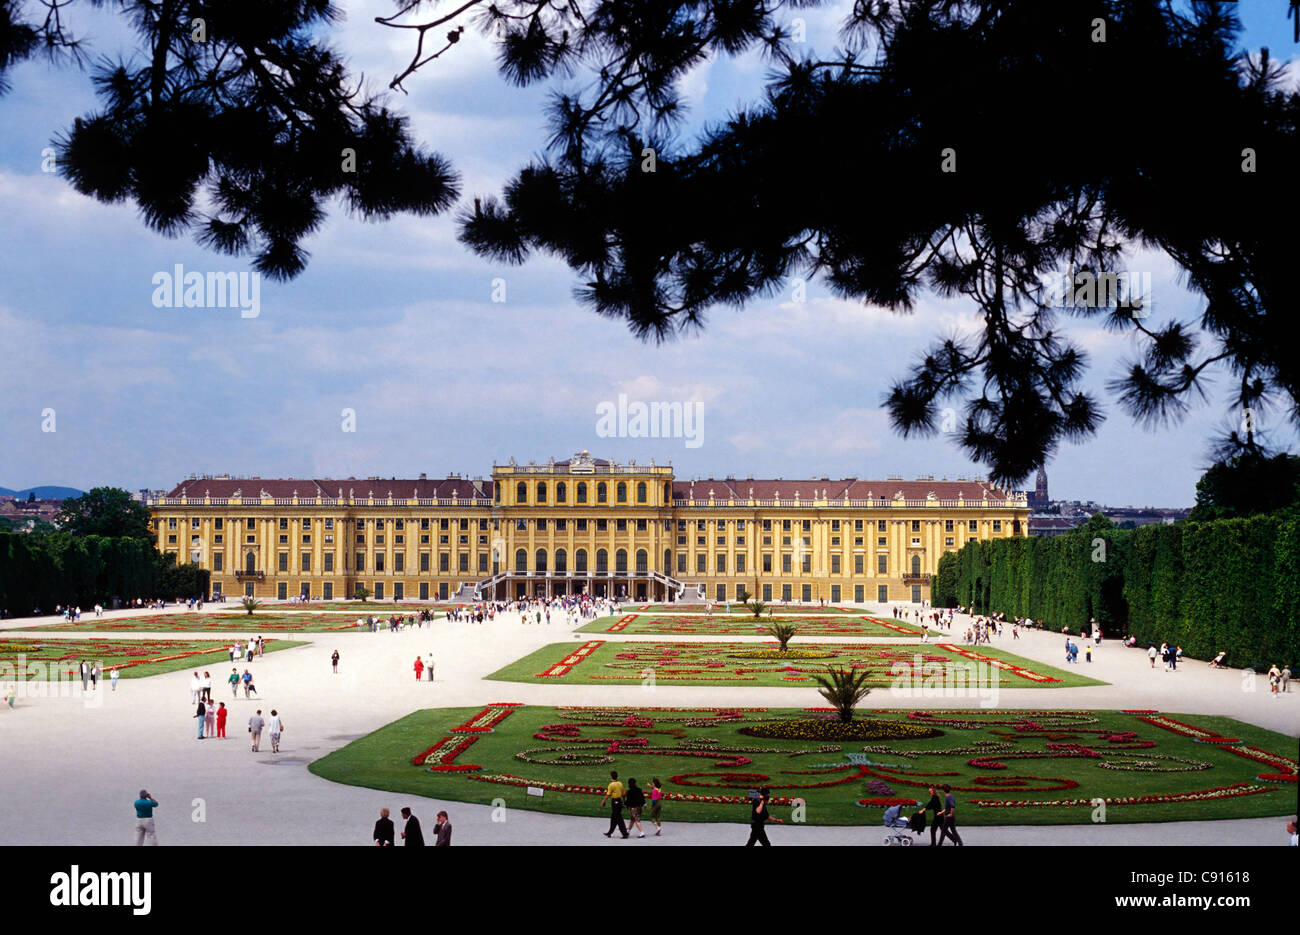 Schonbrunn Palace, named for Spring, Schonen Brunnen, Vienna, Austria, c1700 Stock Photo